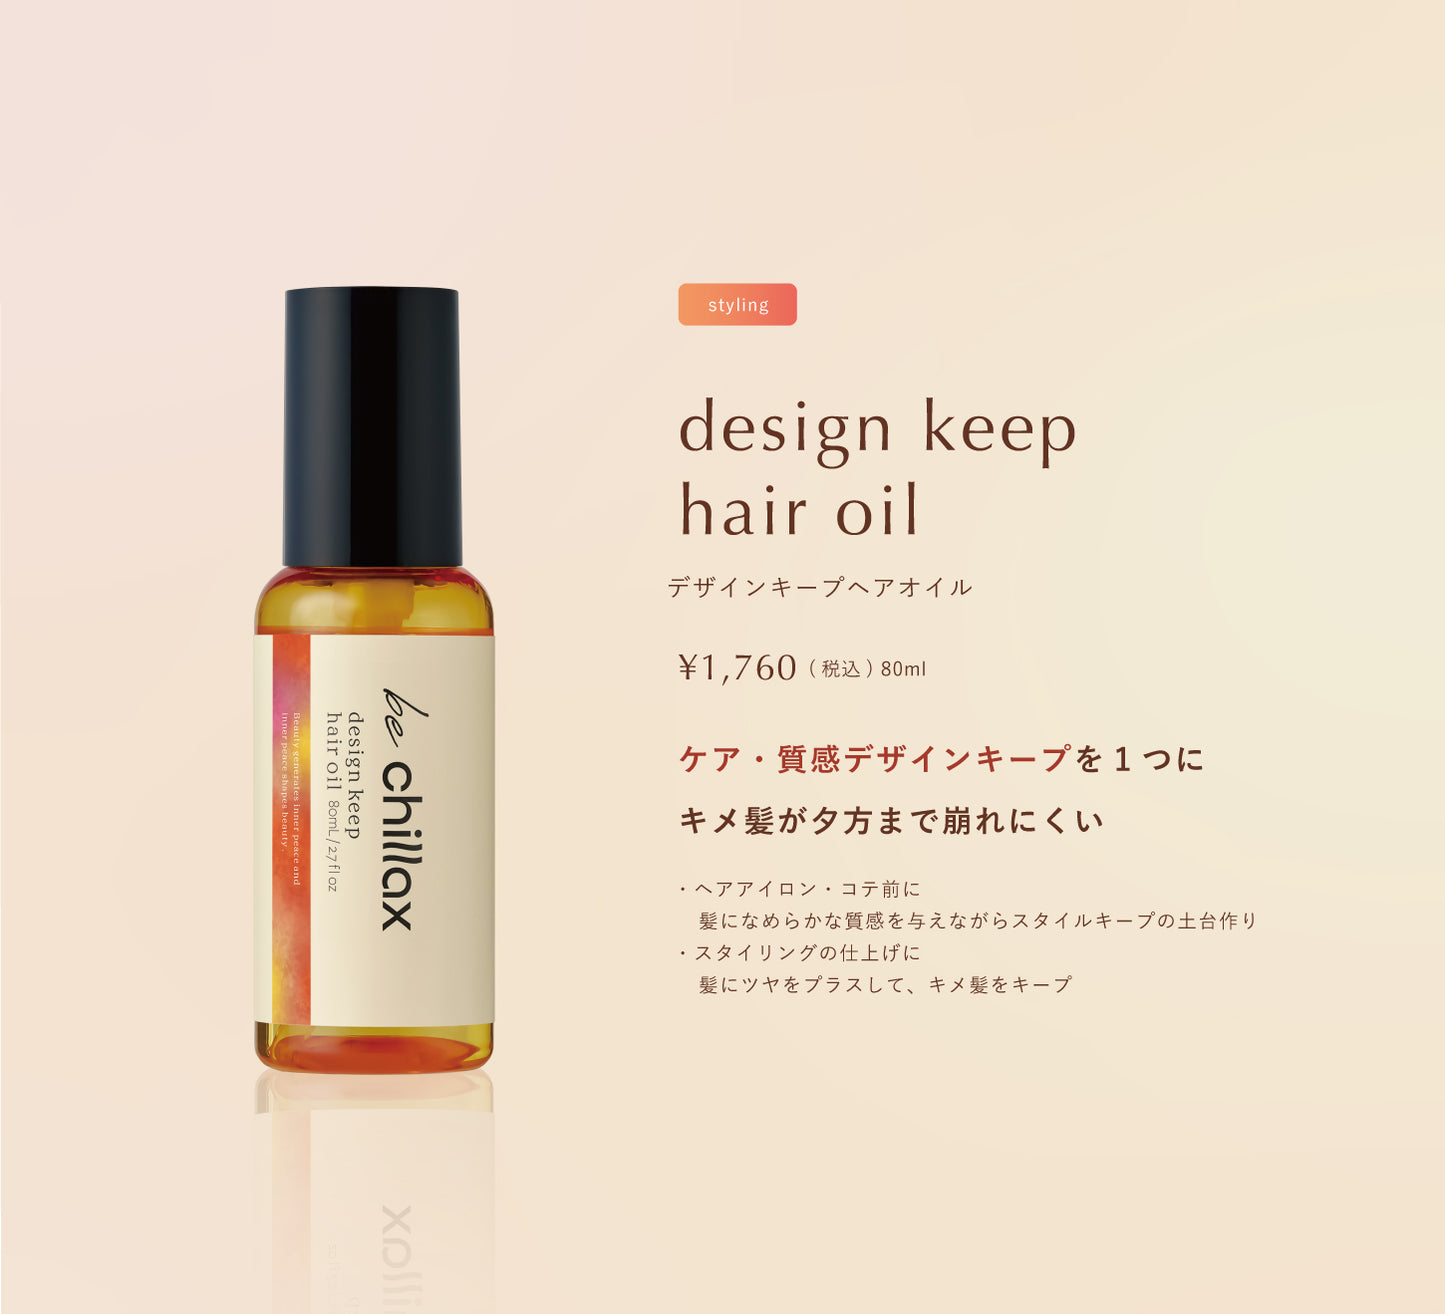 【be chillax】デザインキープヘアオイル